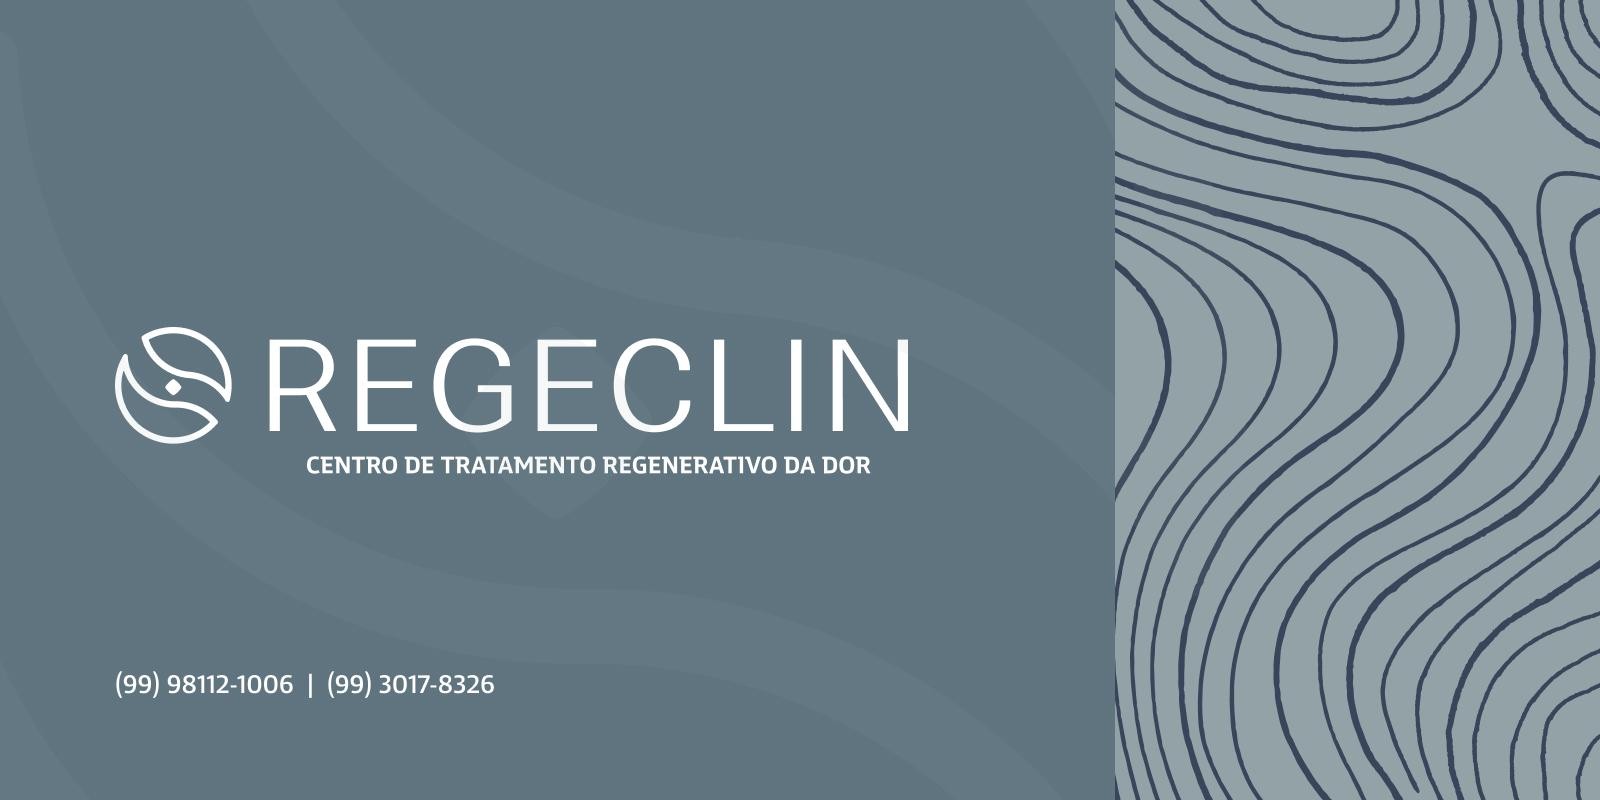 REGECLIN - Centro de Tratamento Regenerativo da Dor